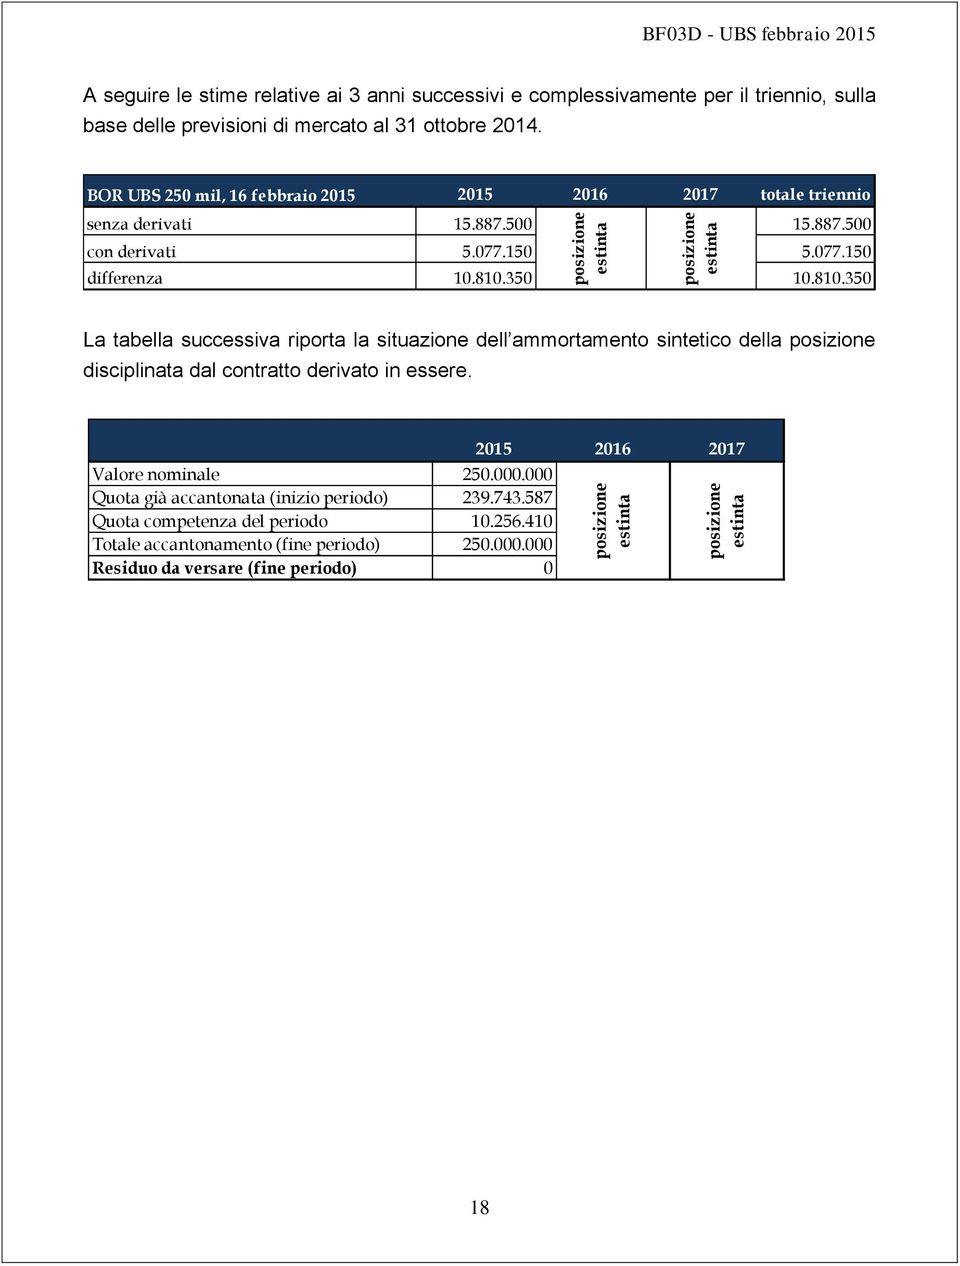 350 10.810.350 La tabella successiva riporta la situazione dell ammortamento sintetico della posizione disciplinata dal contratto derivato in essere. Valore nominale 250.000.